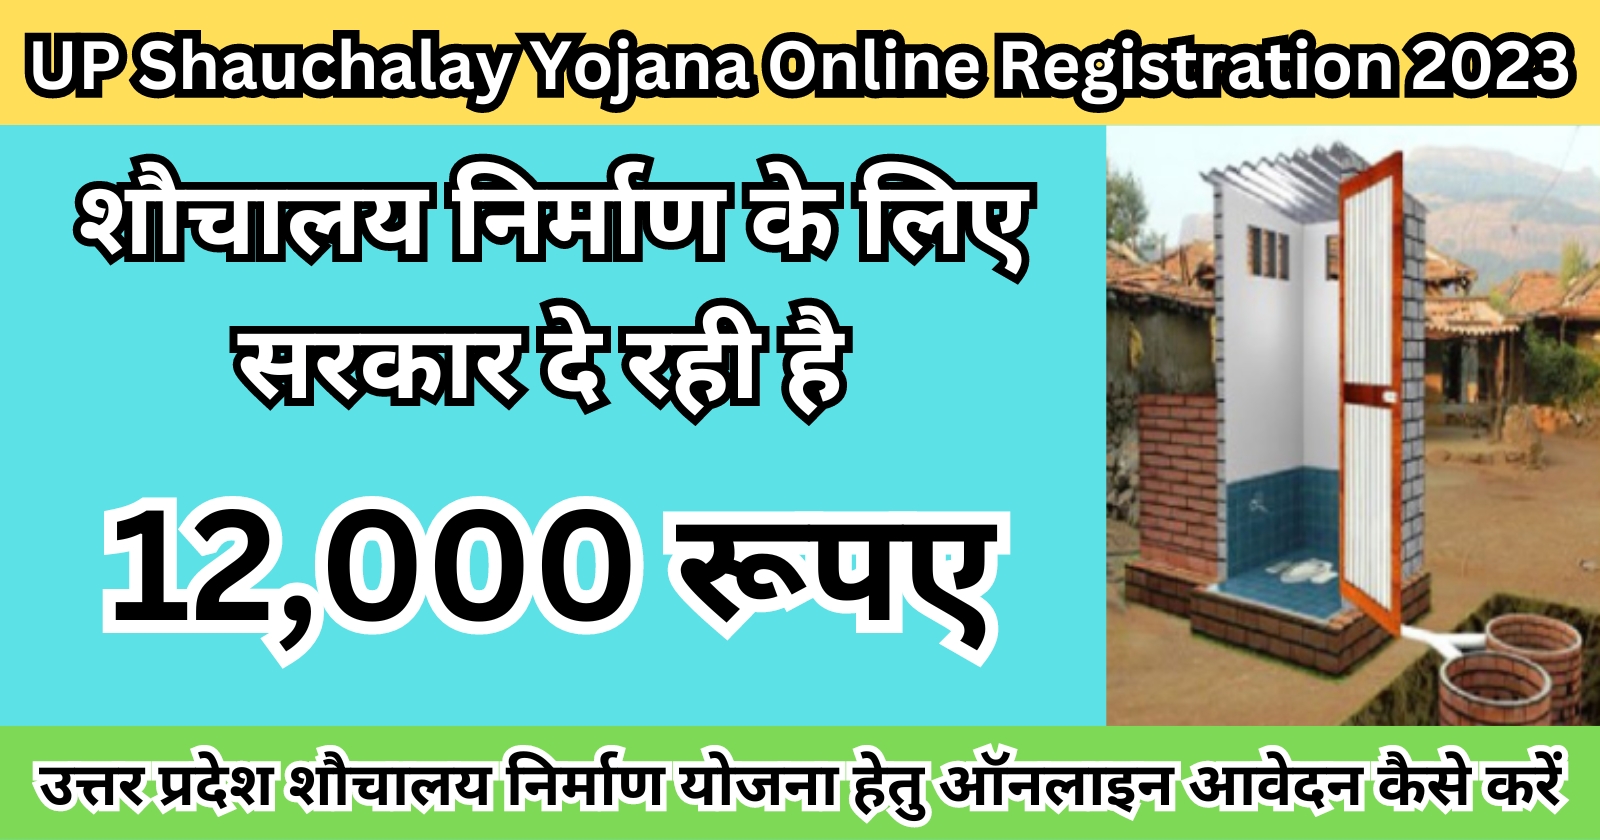 UP Shauchalay Yojana Online Registration 2023